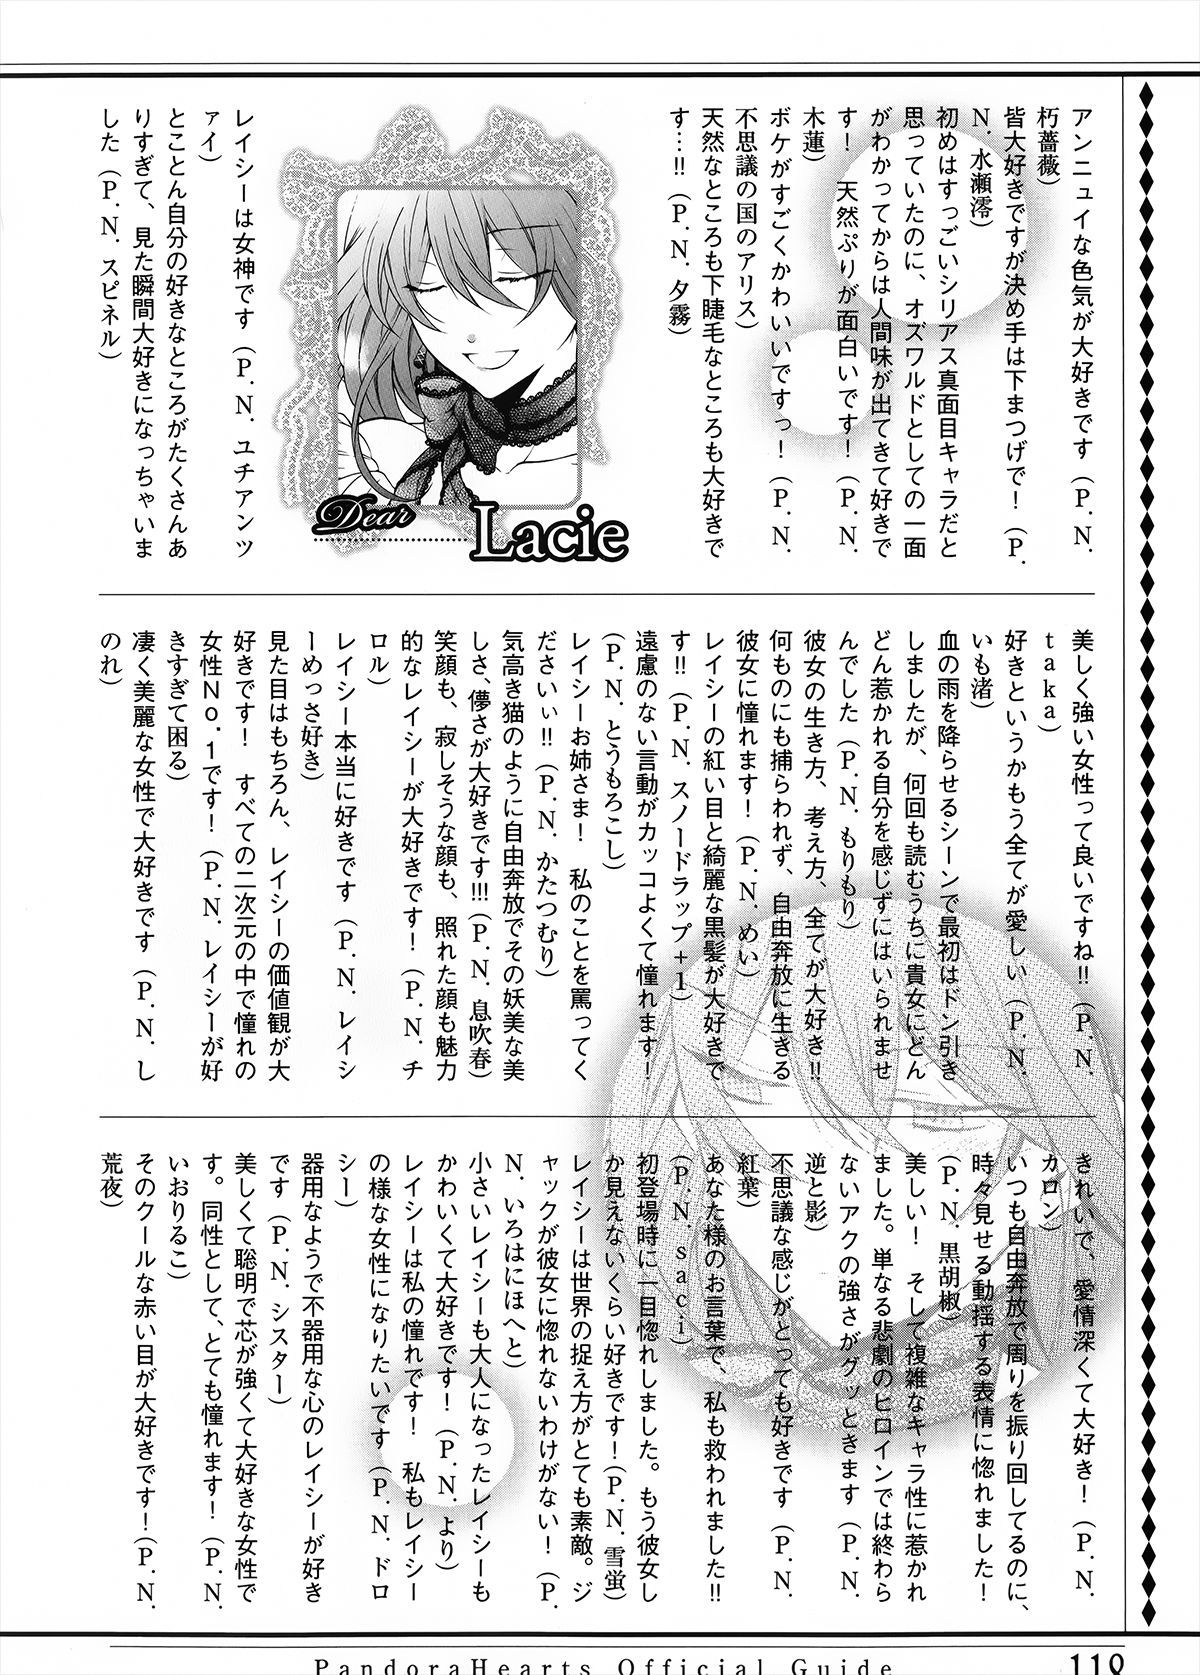 Pandora Hearts Guidebook 24+1: Last Dance パンドラハーツ オフィシャルガイド 24 + 1 ~Last Dance! 121